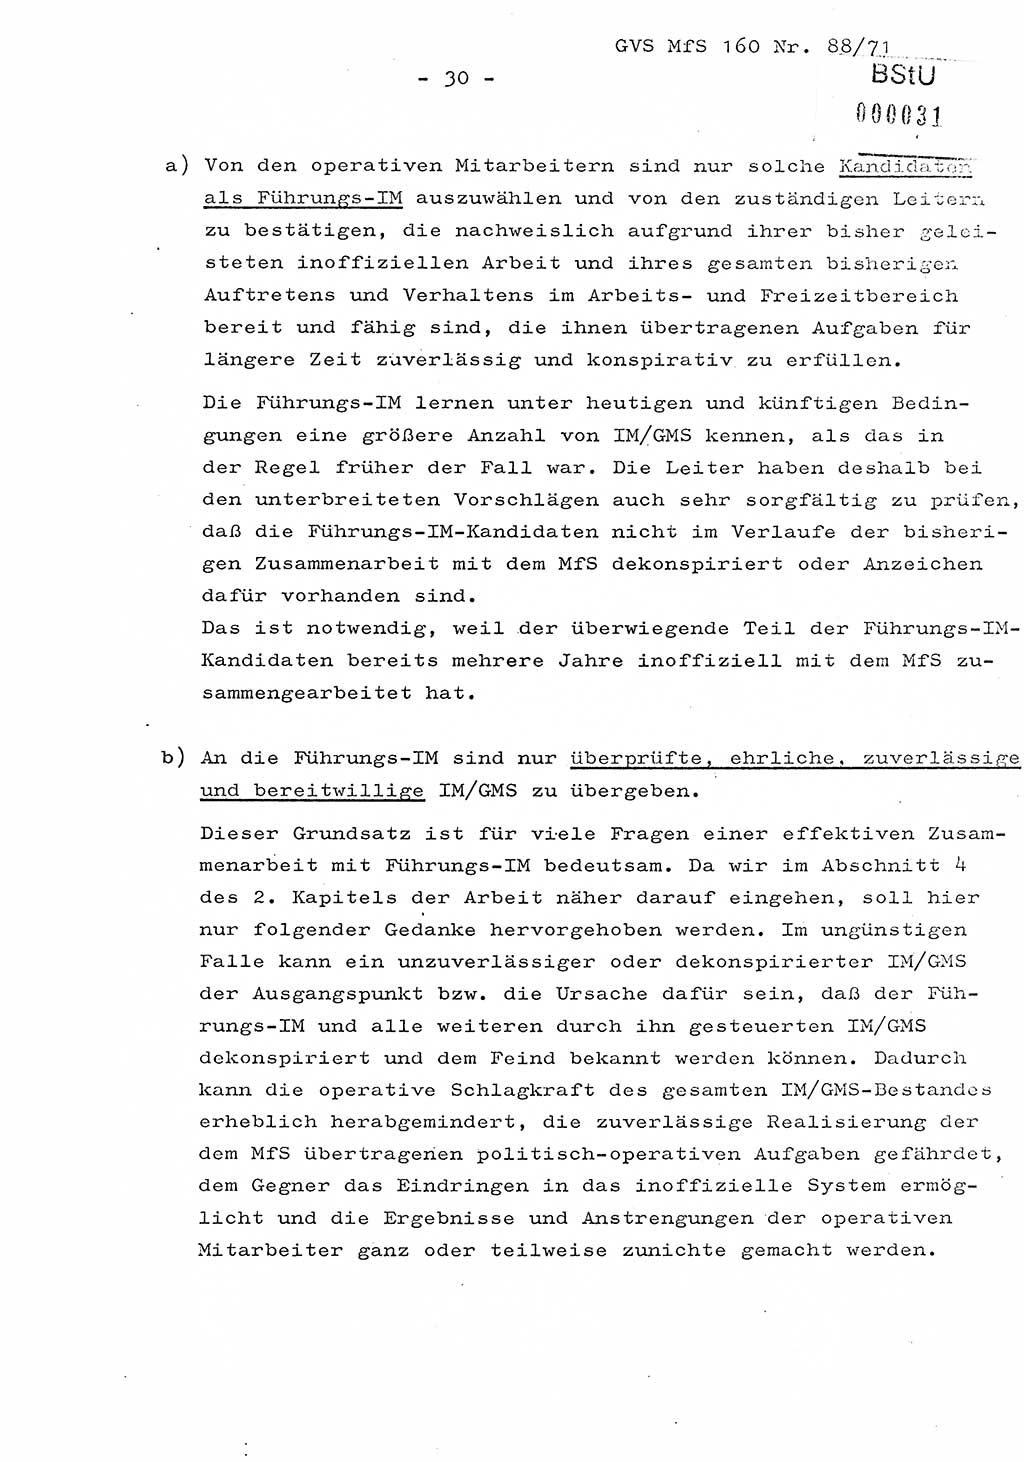 Dissertation Oberstleutnant Josef Schwarz (BV Schwerin), Major Fritz Amm (JHS), Hauptmann Peter Gräßler (JHS), Ministerium für Staatssicherheit (MfS) [Deutsche Demokratische Republik (DDR)], Juristische Hochschule (JHS), Geheime Verschlußsache (GVS) 160-88/71, Potsdam 1972, Seite 30 (Diss. MfS DDR JHS GVS 160-88/71 1972, S. 30)